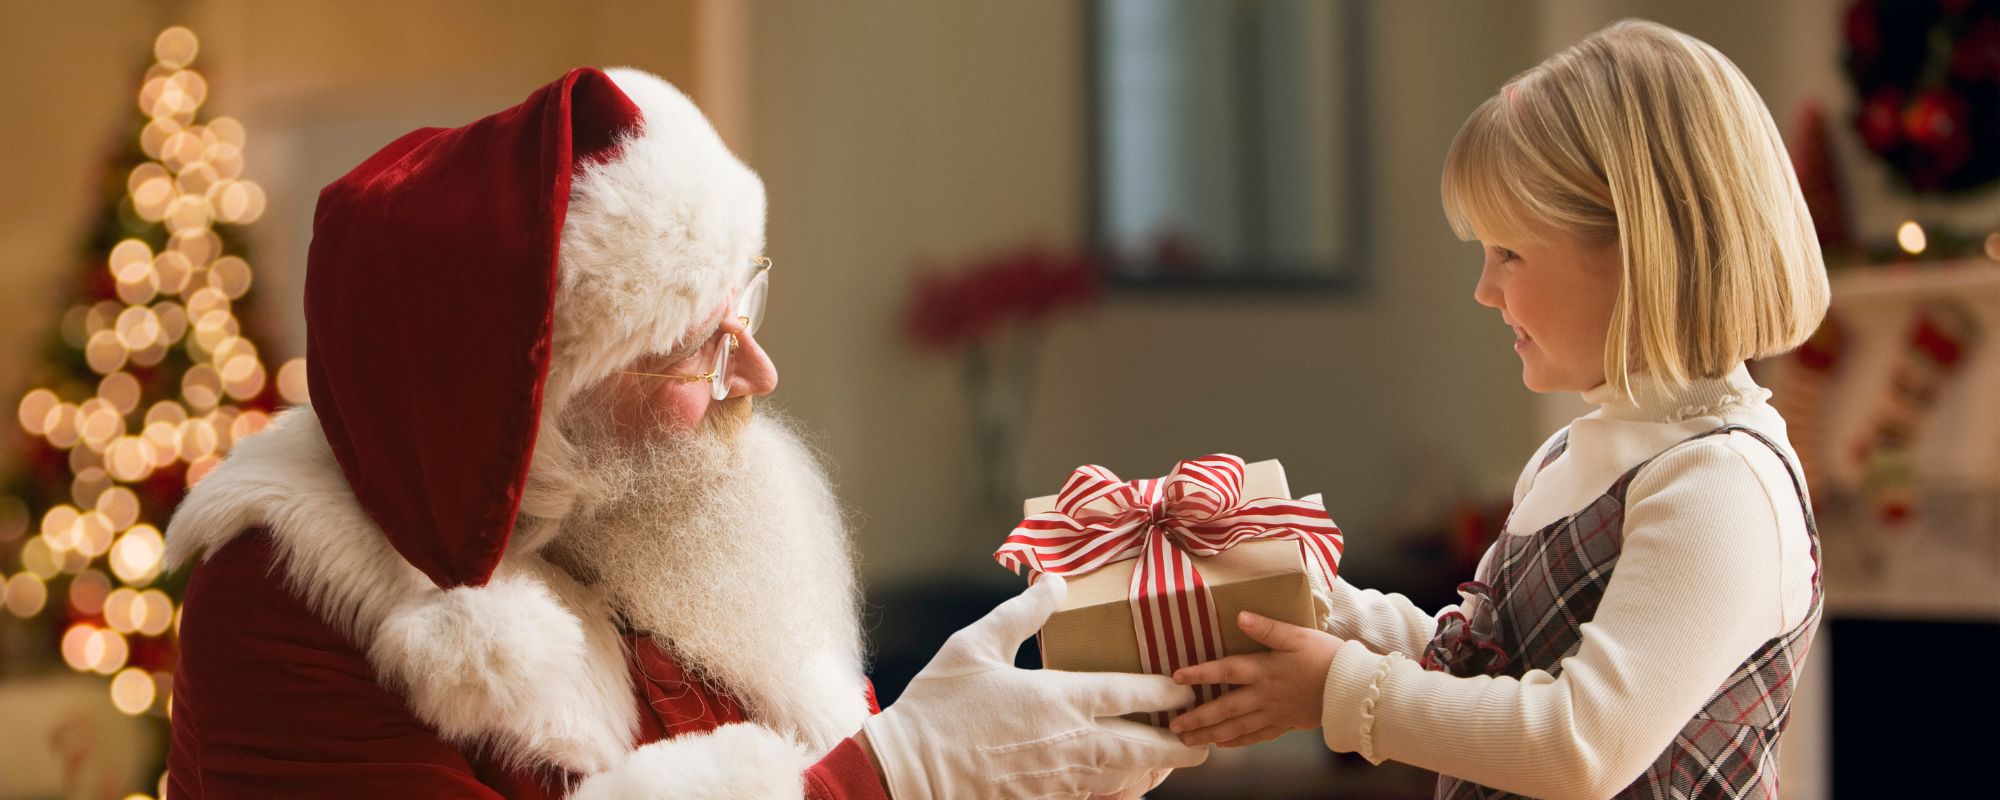 Вручение подарков детям. Дед Мороз дарит подарки. Подарки Деда Мороза. Дед Моро задрит подарок детям.